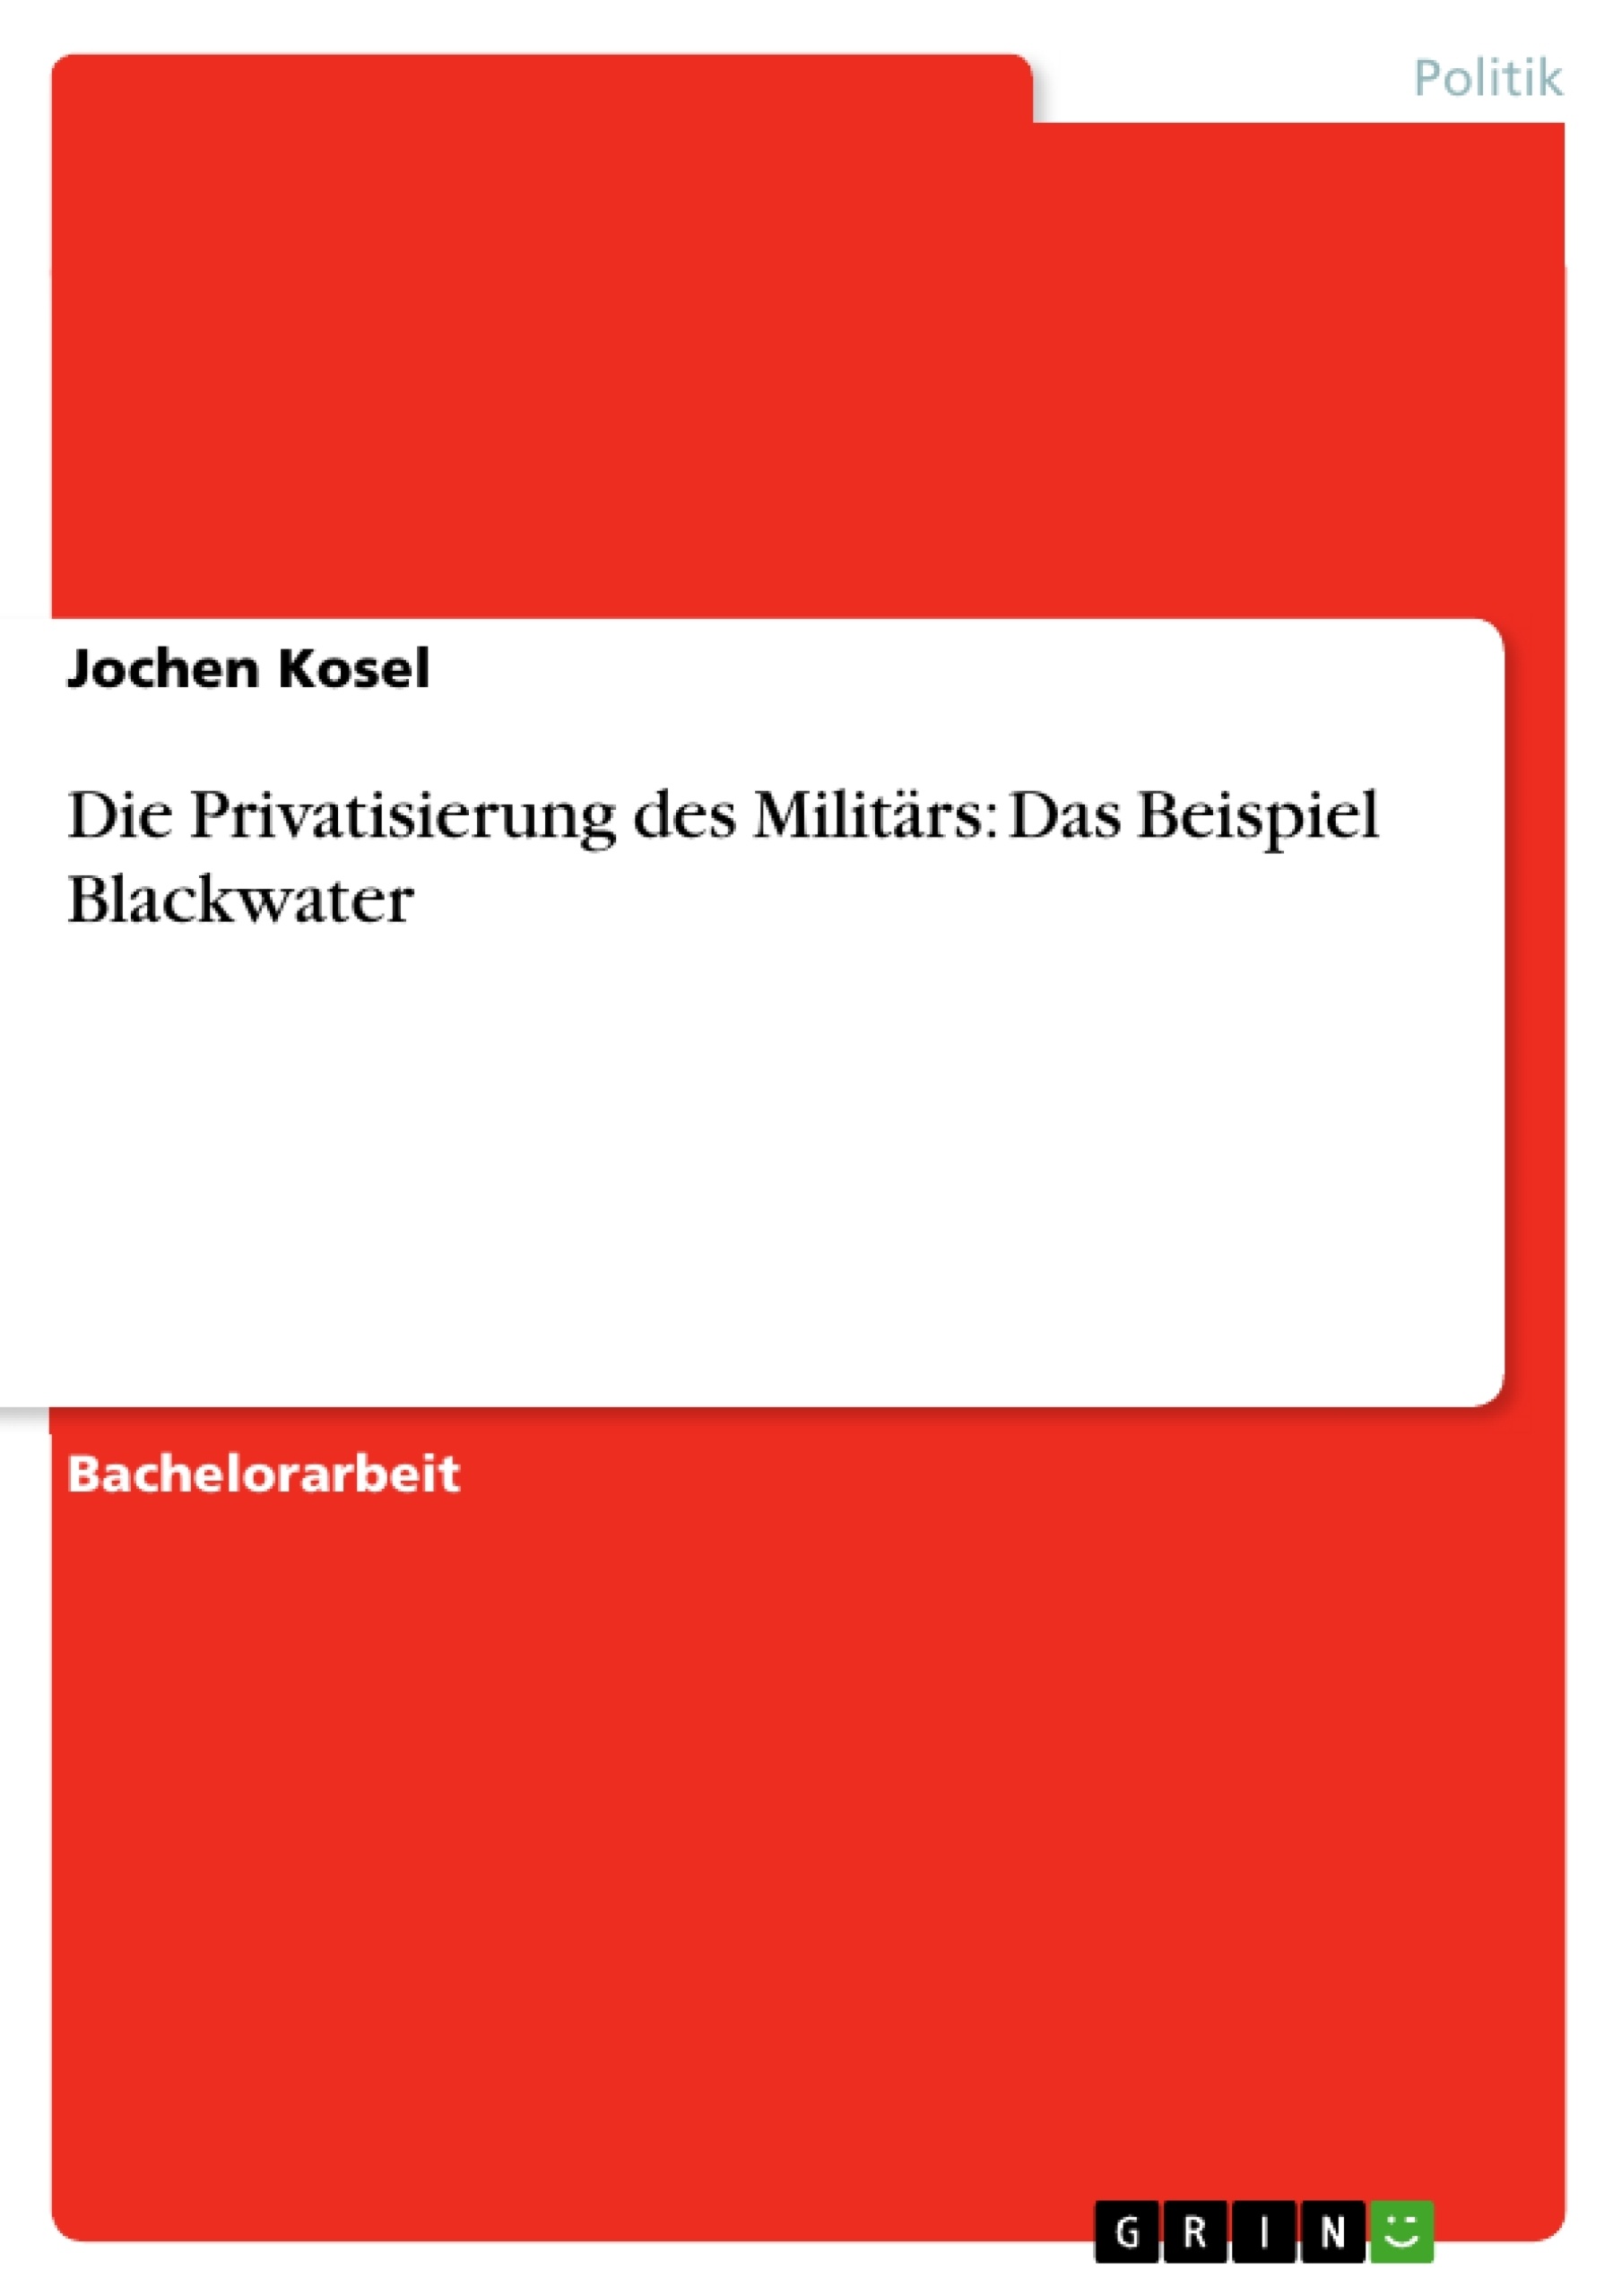 Title: Die Privatisierung des Militärs: Das Beispiel Blackwater